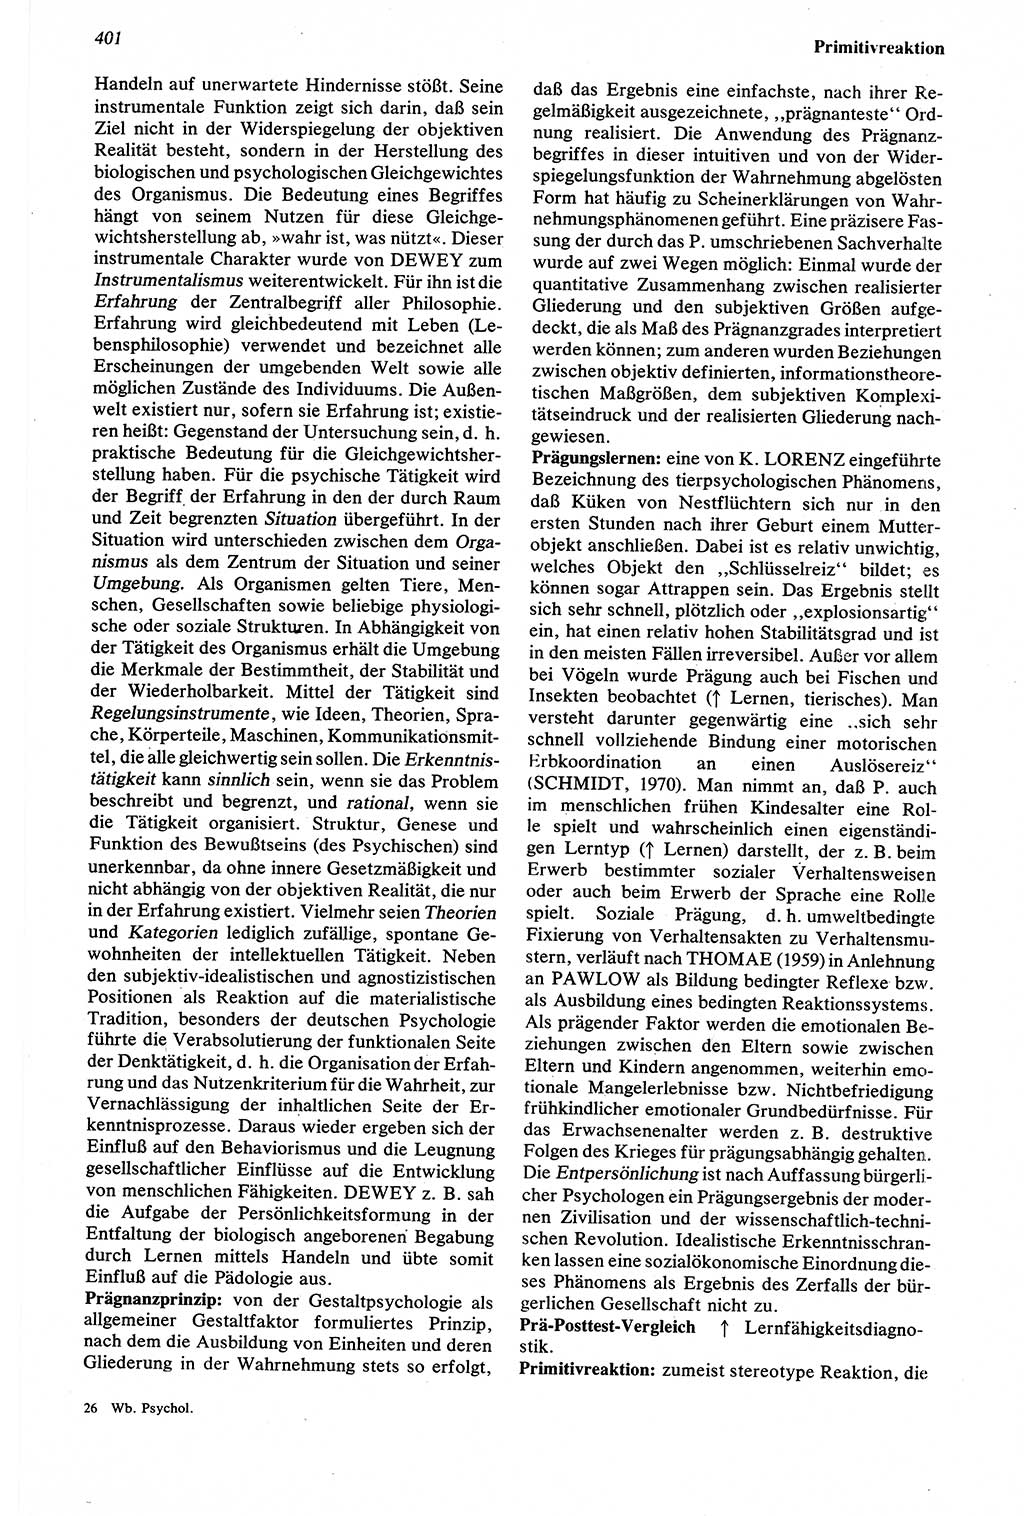 Wörterbuch der Psychologie [Deutsche Demokratische Republik (DDR)] 1976, Seite 401 (Wb. Psych. DDR 1976, S. 401)